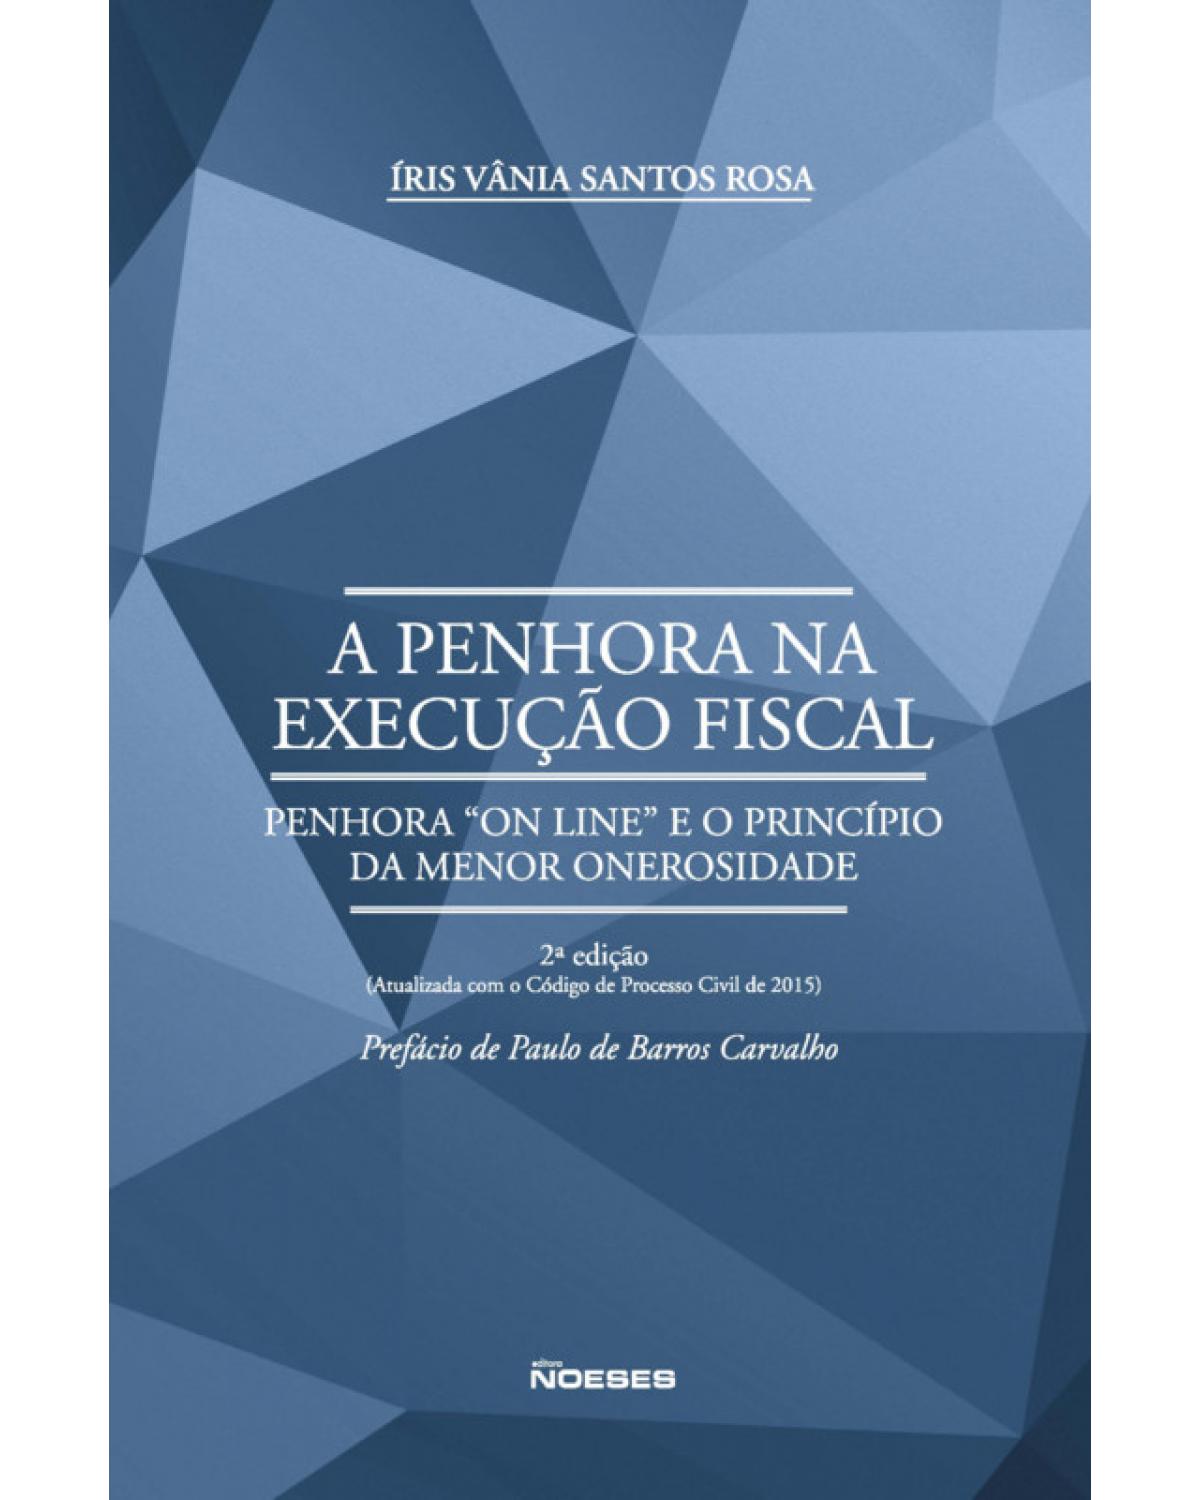 A penhora na execução fiscal: Penhora "on line" e o princípio da menor onerosidade - 2ª Edição